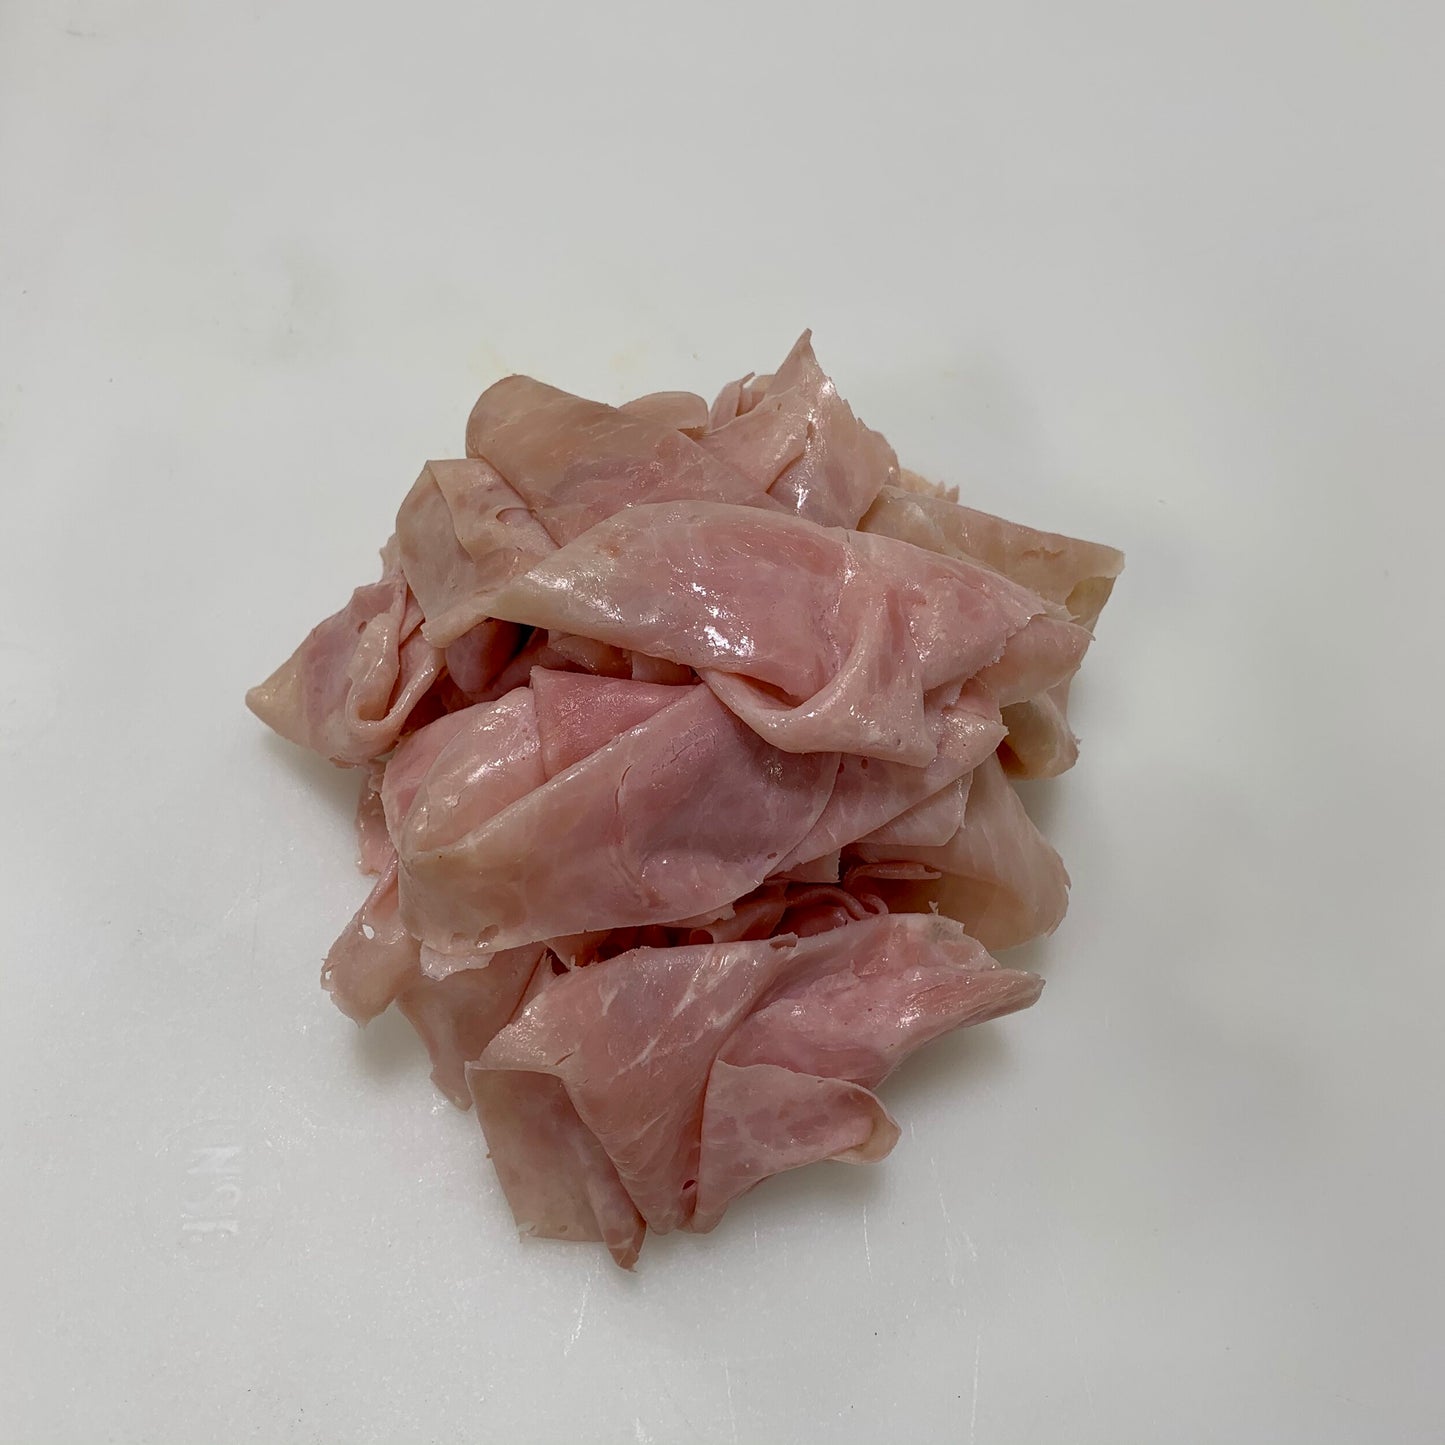 Hatfield Premium Cooked Ham